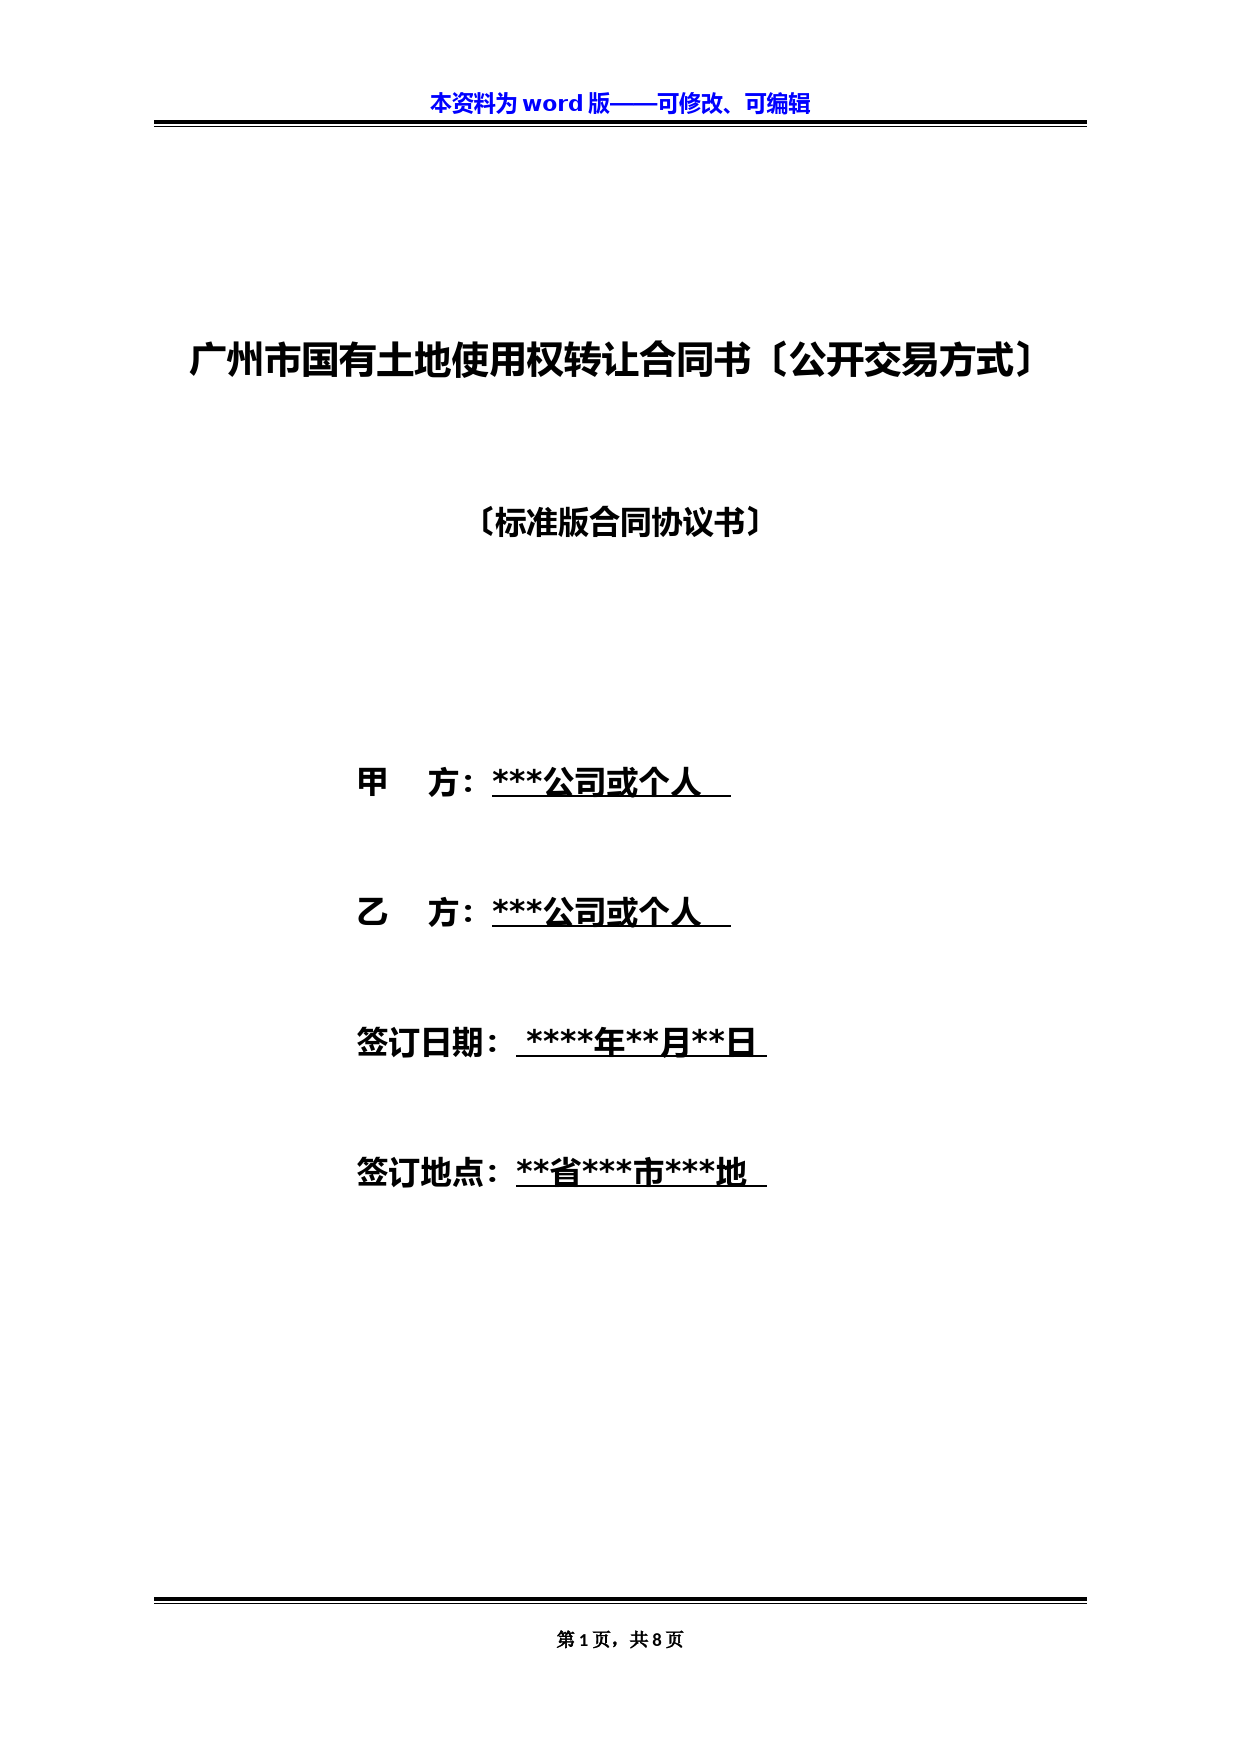 广州市国有土地使用权转让合同书(公开交易方式)(标准版)